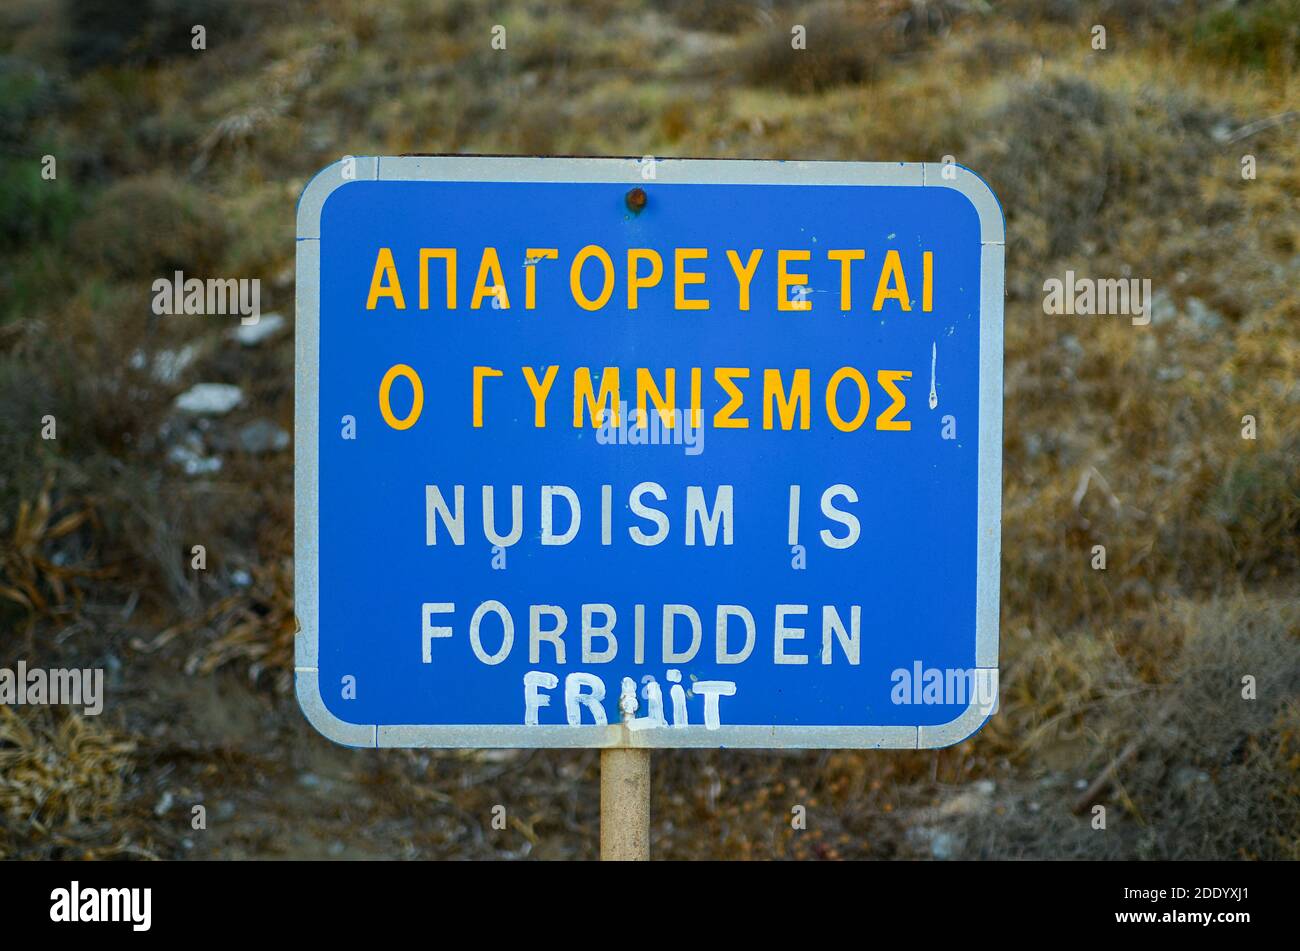 Nudismus Nudism and